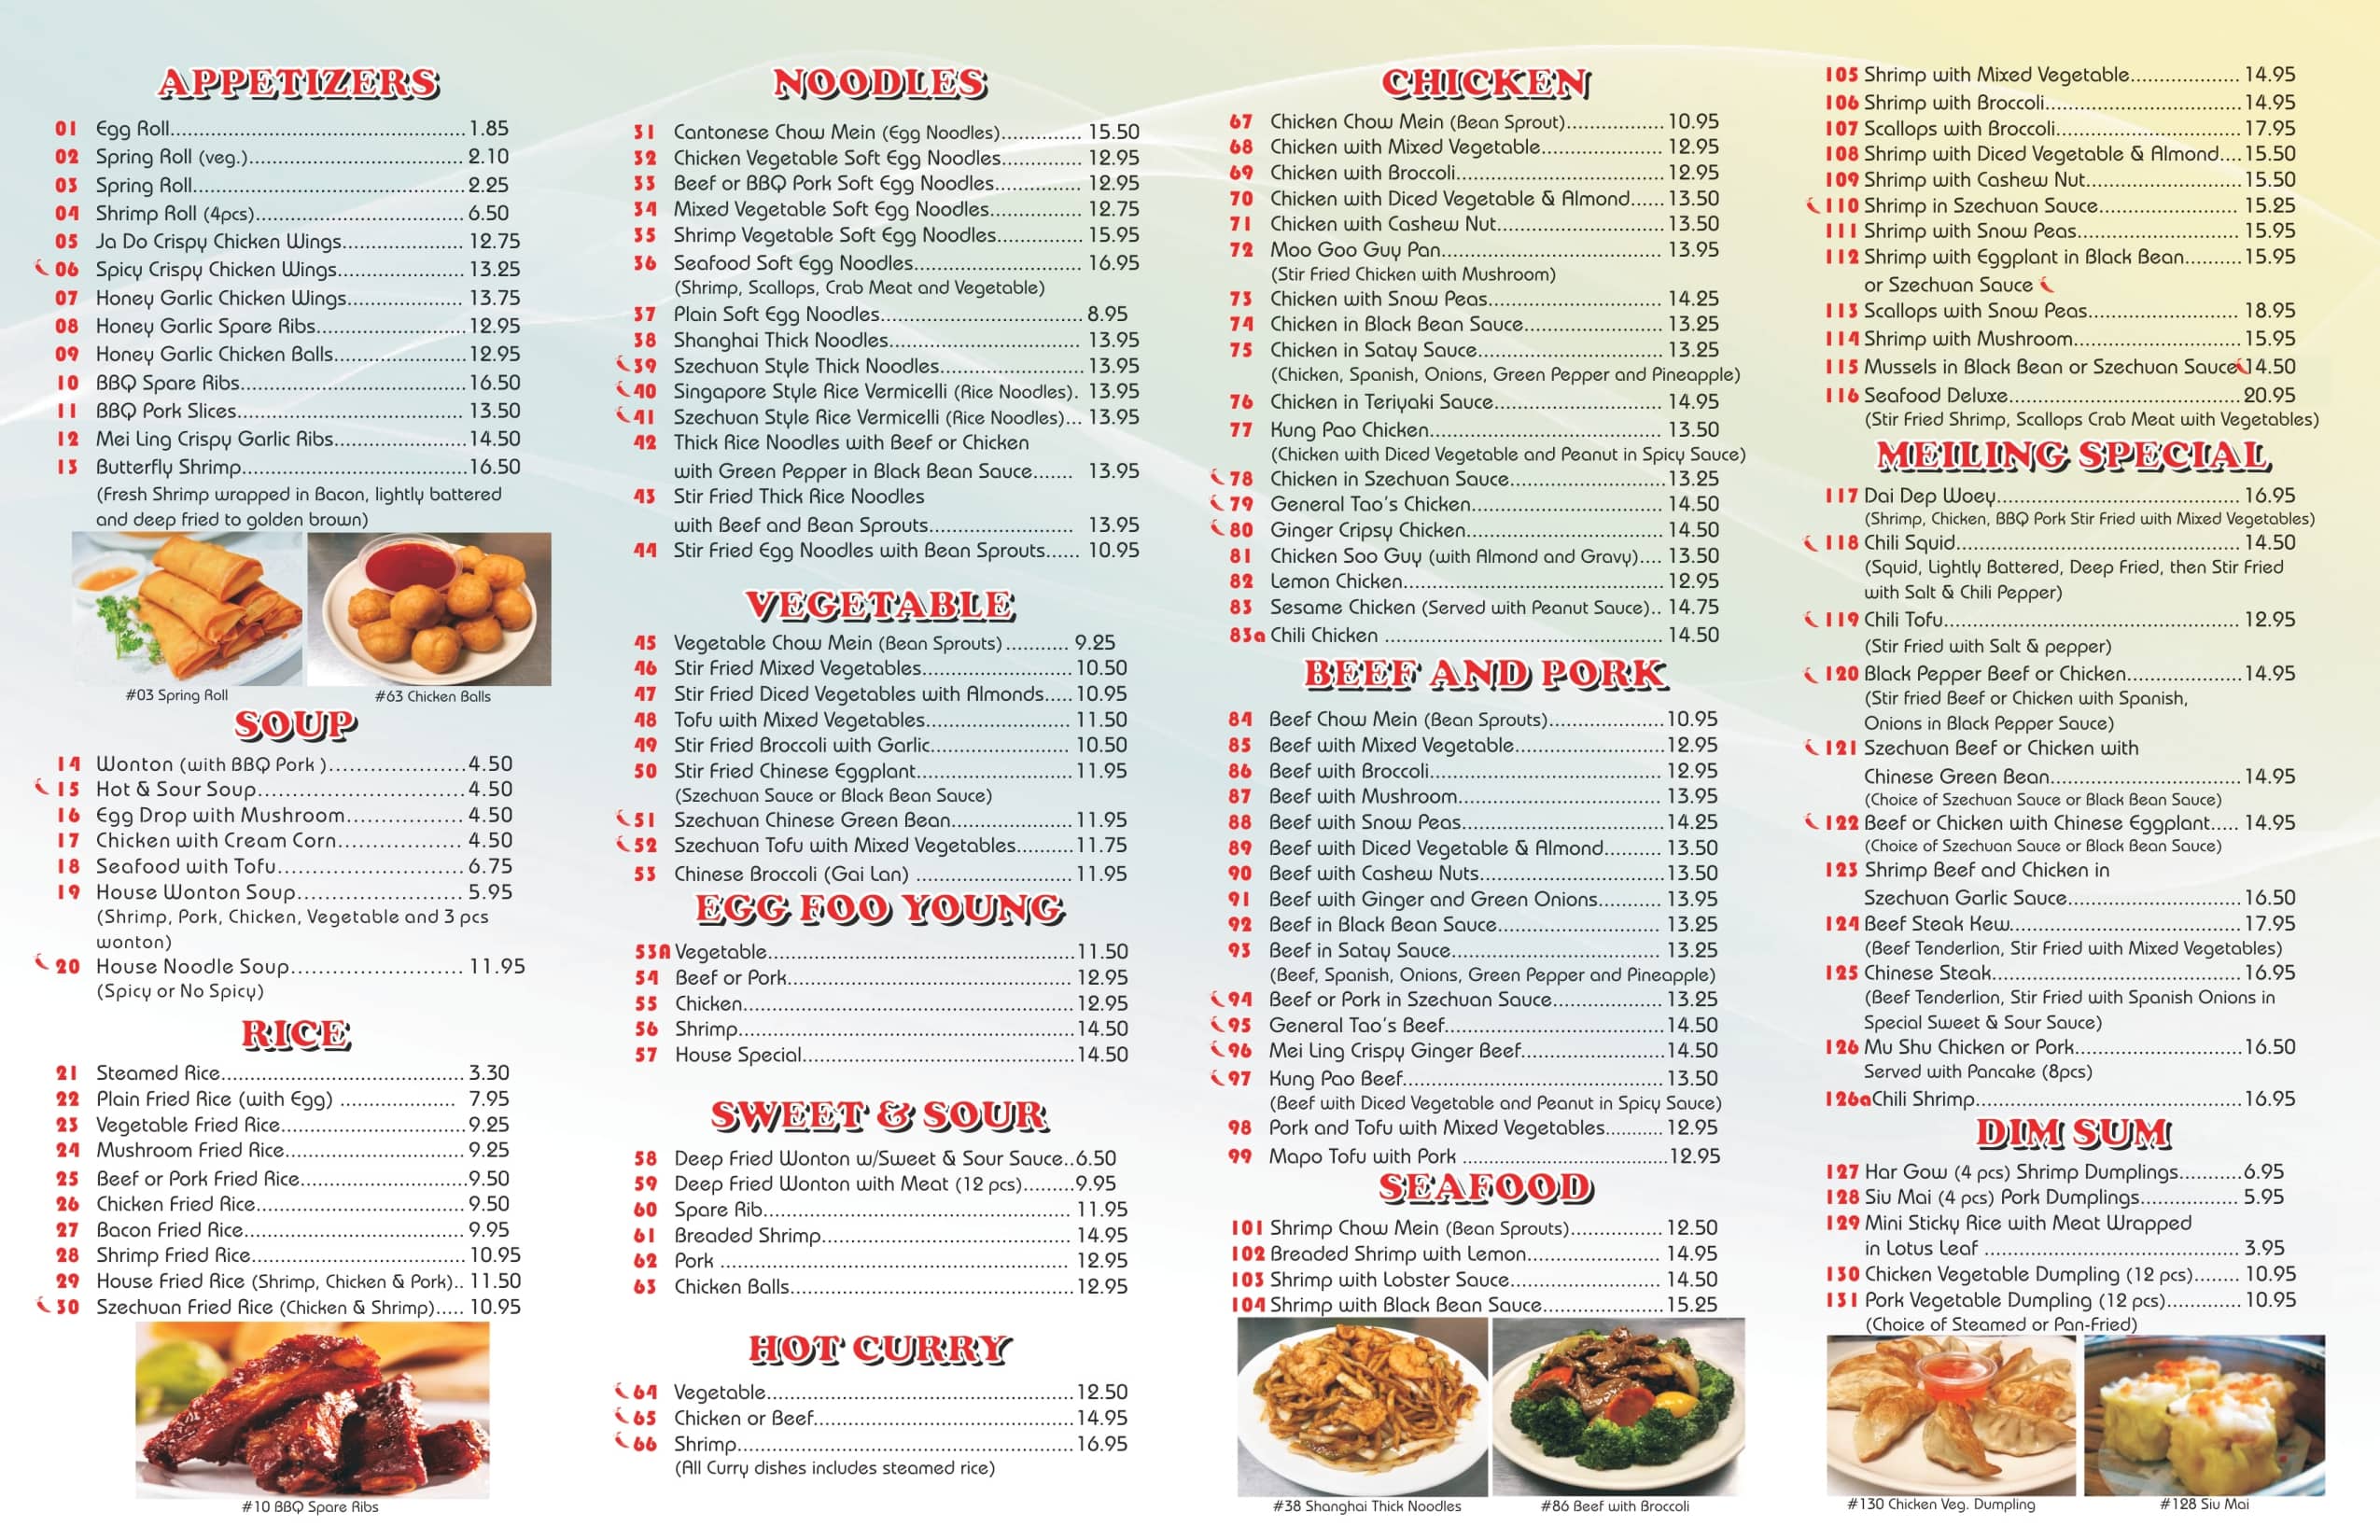 chinese restaurant menu